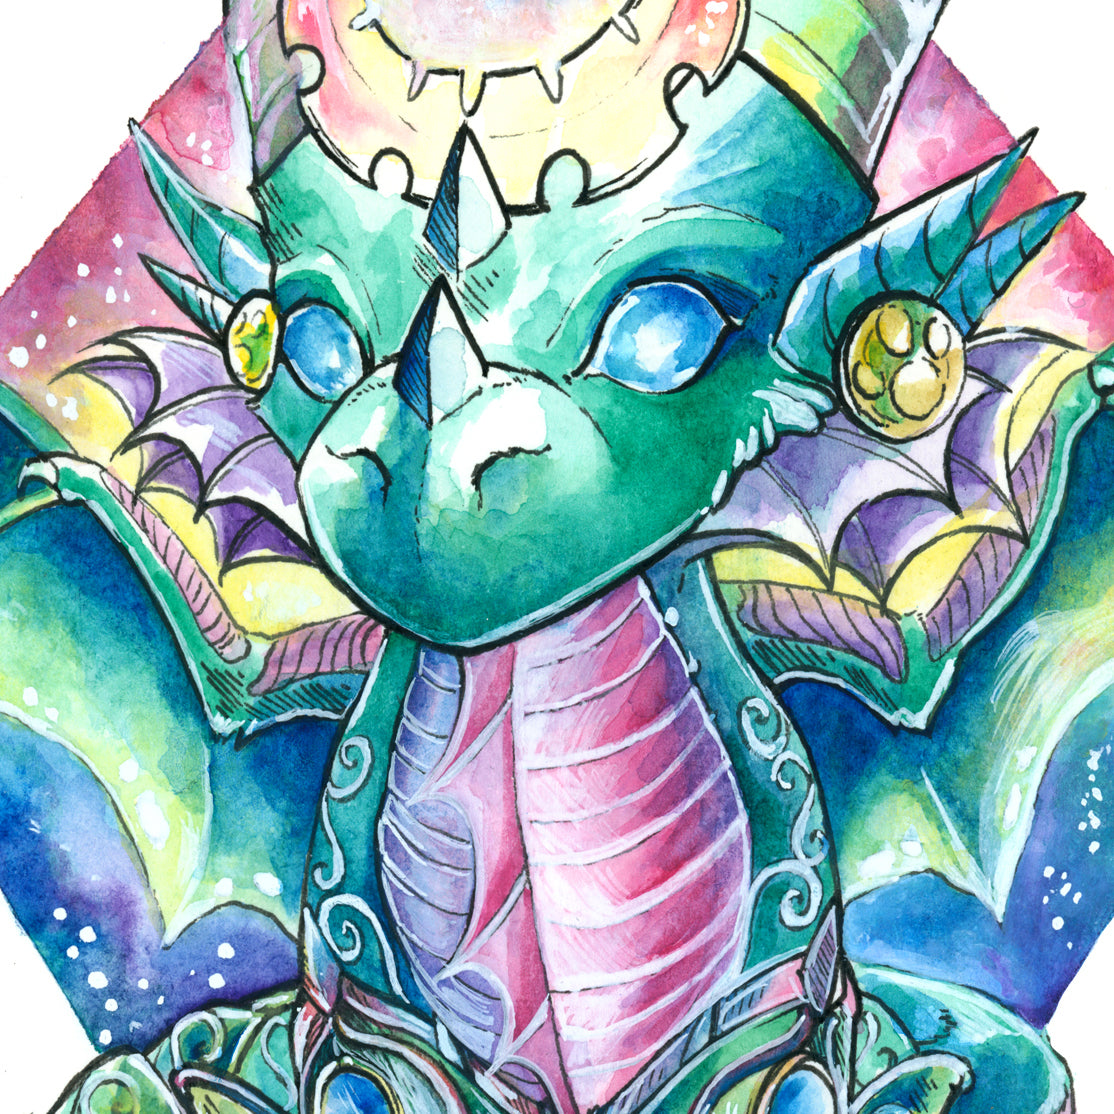 Chibi Dragon of Dreams Print - A3/A4/A5